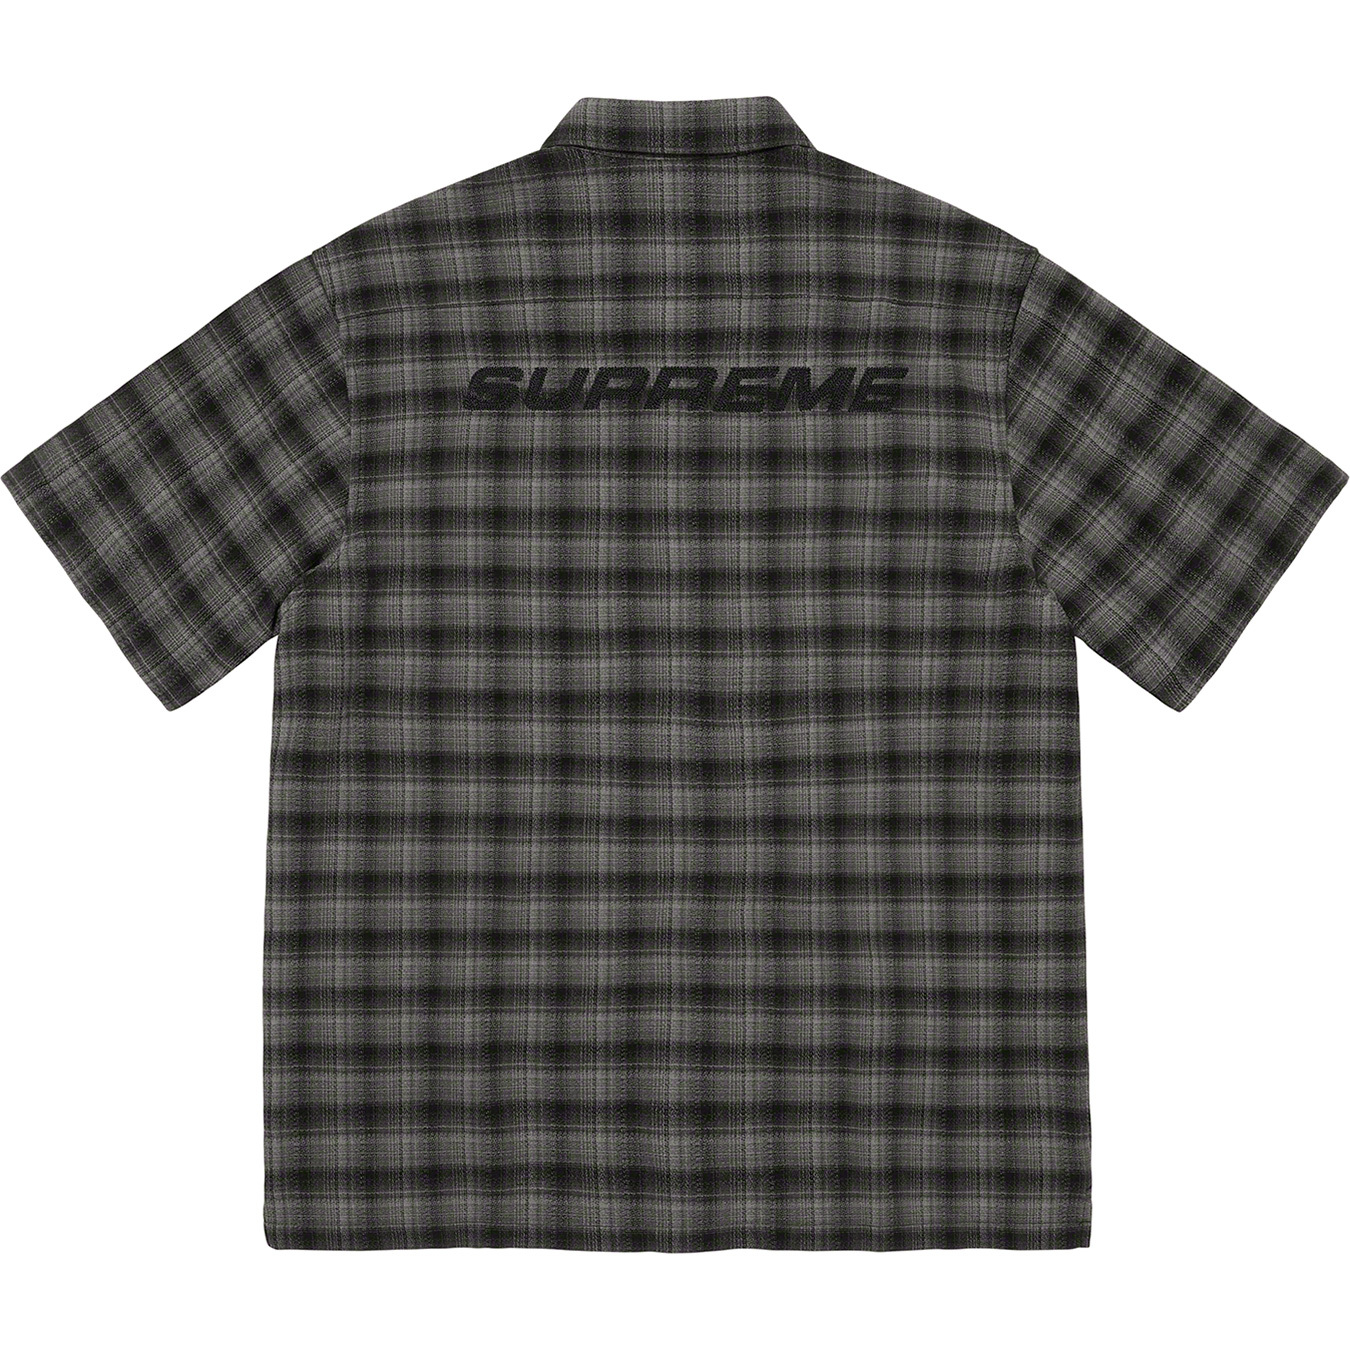 8,050円supreme plaid S/S shirt black 22ss our's